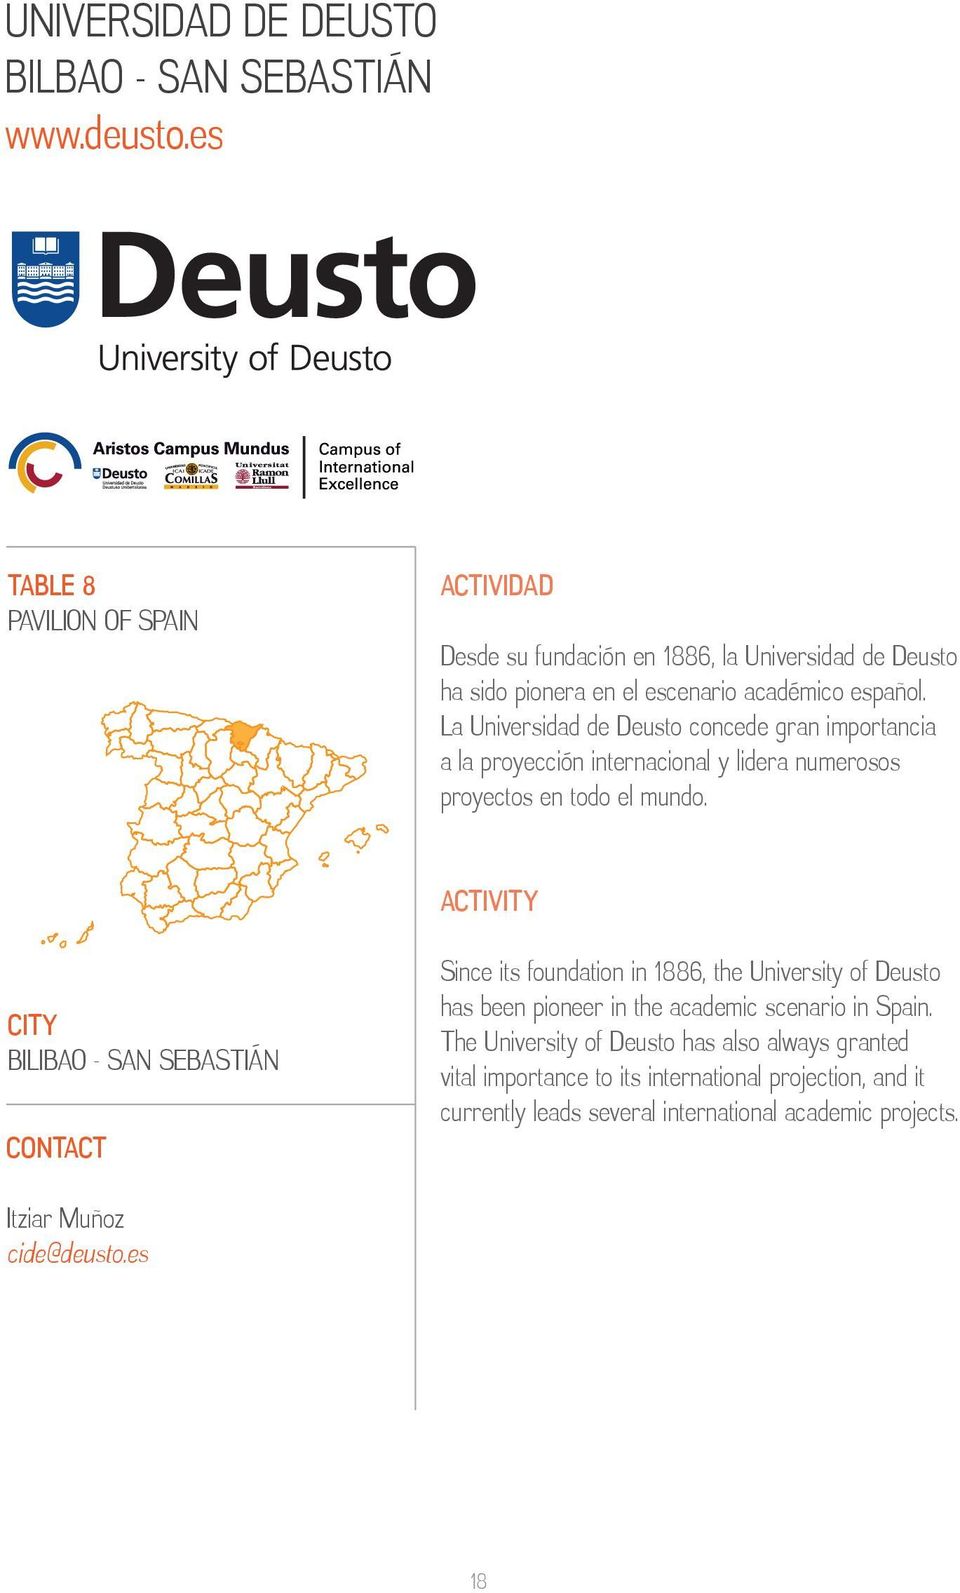 La Universidad de Deusto concede gran importancia a la proyección internacional y lidera numerosos proyectos en todo el mundo.